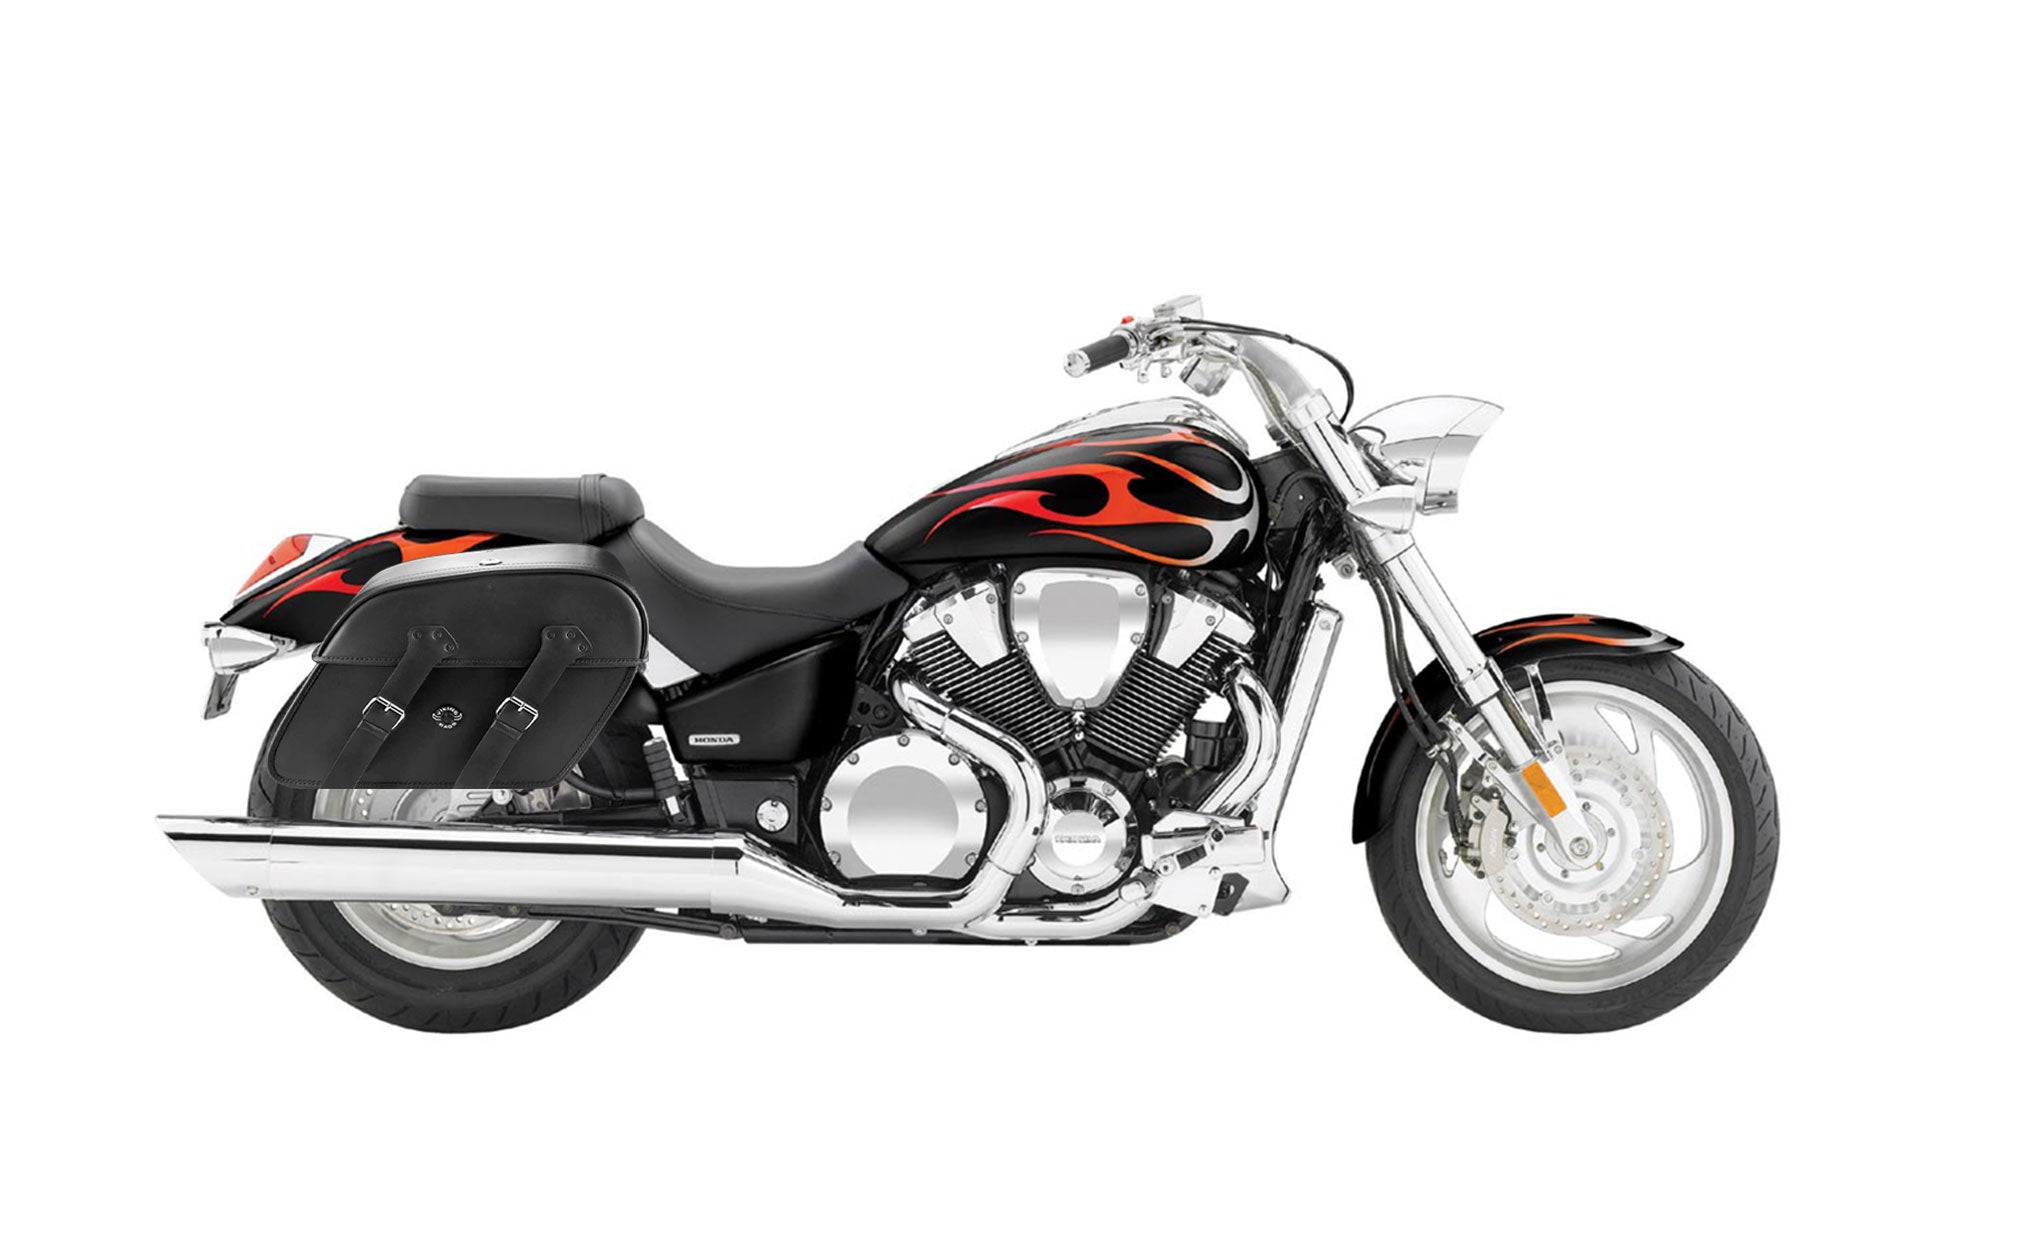 Viking Raven Extra Large Honda Vtx 1800 C Shock Cut Out Leather Motorcycle Saddlebags on Bike Photo @expand